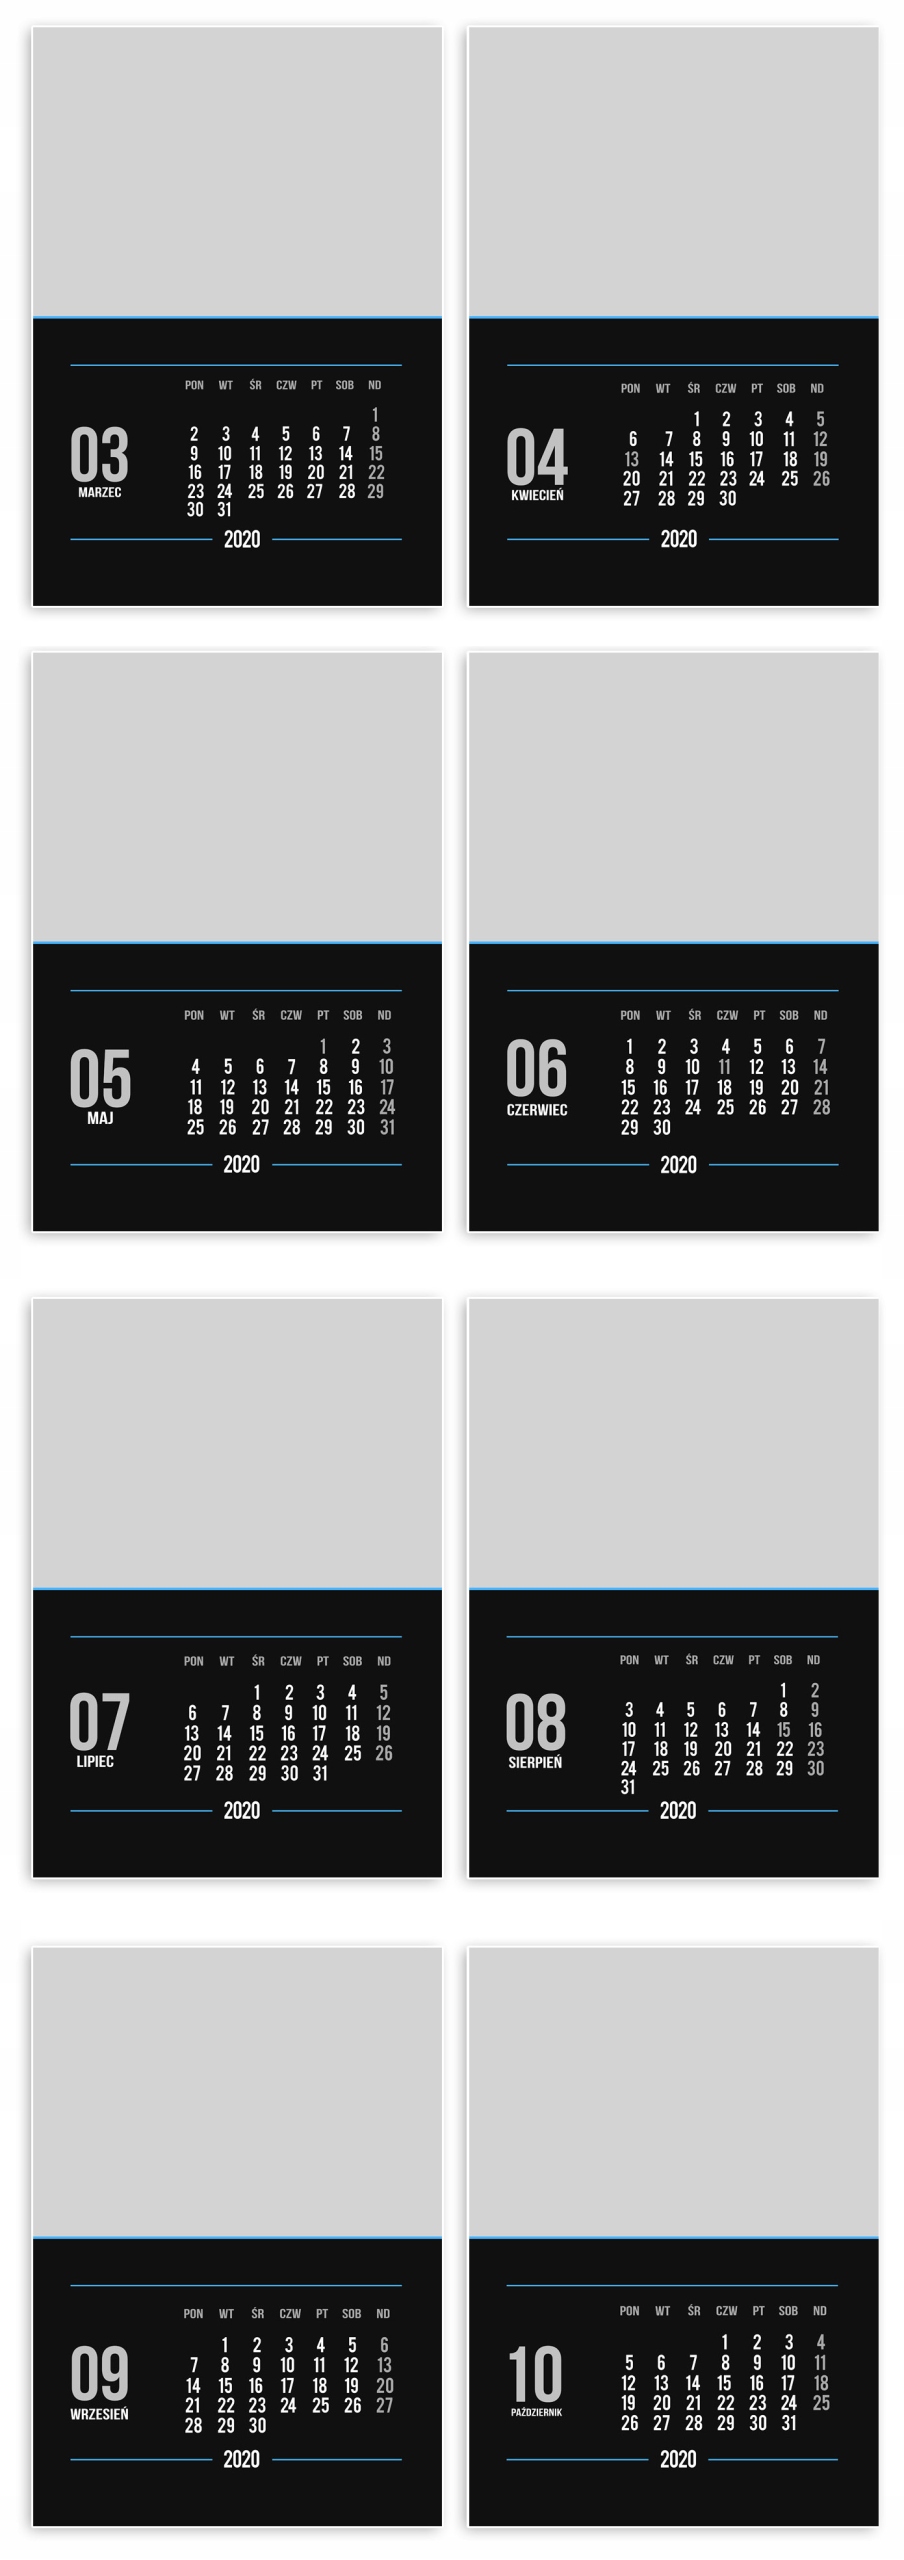 foto kalendarz A3 kalendarium 2020 szablony do projektowania kalendarza z własnych zdjęć